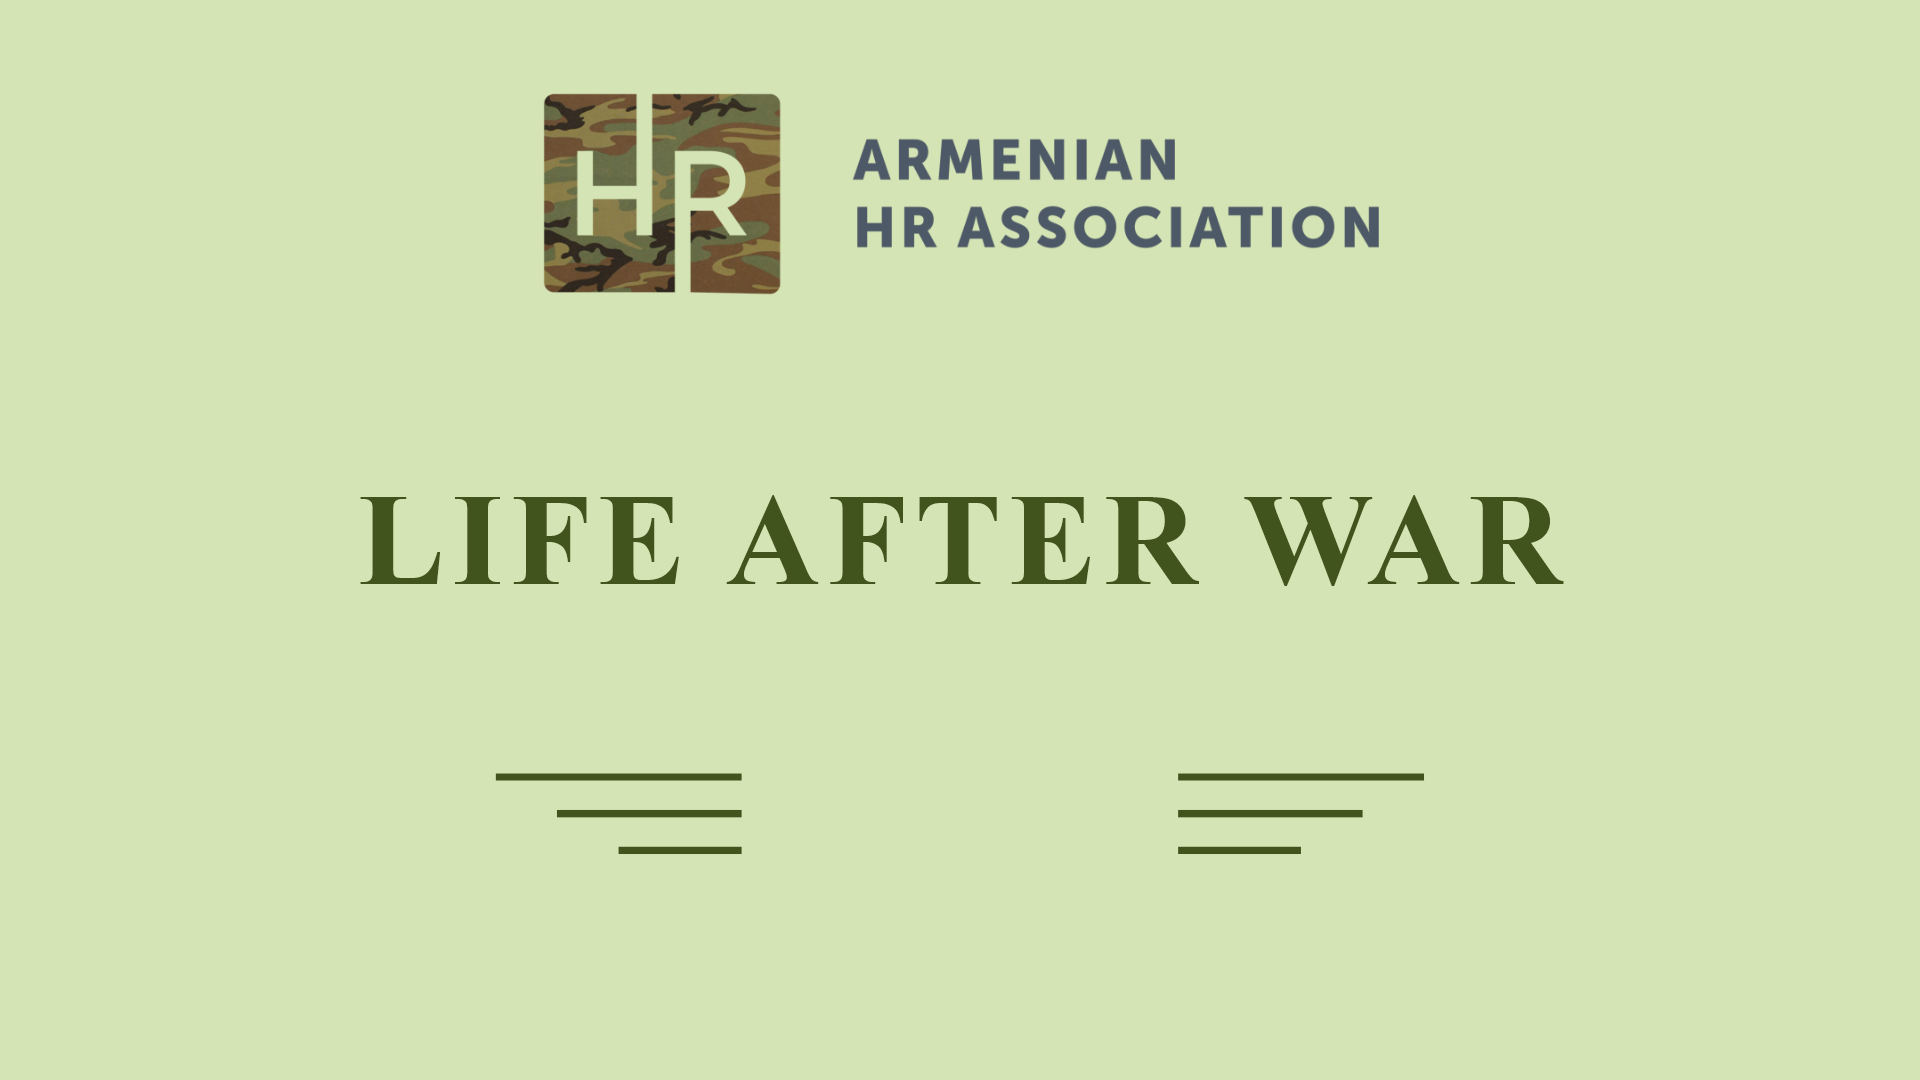 Life after war